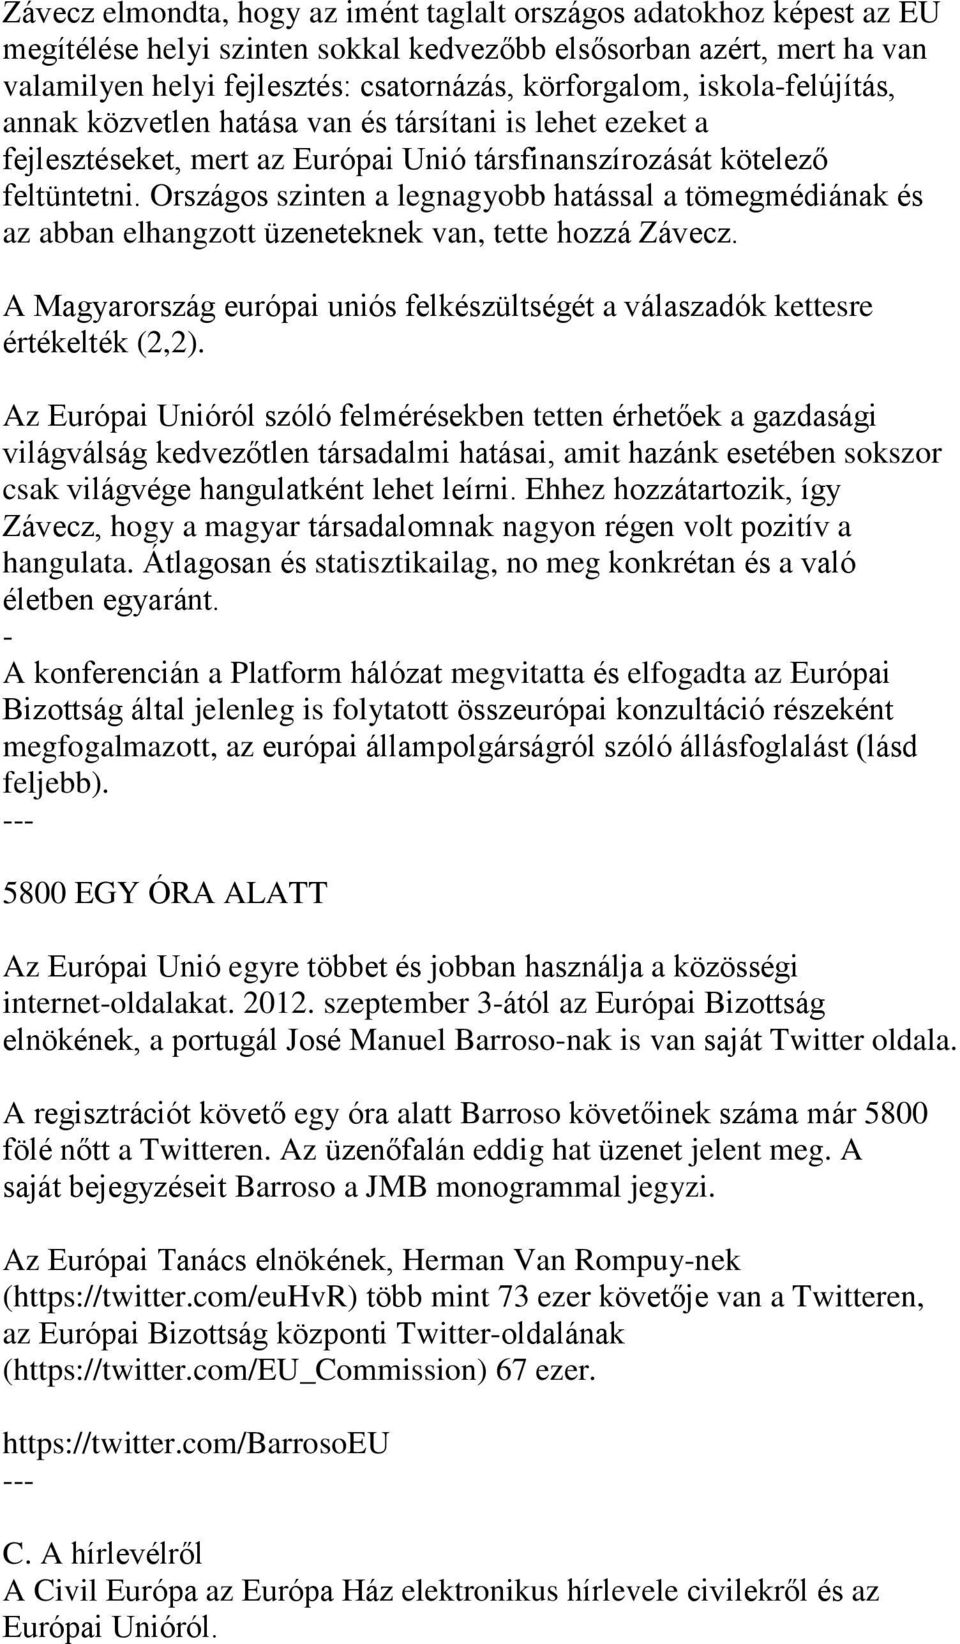 Országos szinten a legnagyobb hatással a tömegmédiának és az abban elhangzott üzeneteknek van, tette hozzá Závecz. A Magyarország európai uniós felkészültségét a válaszadók kettesre értékelték (2,2).